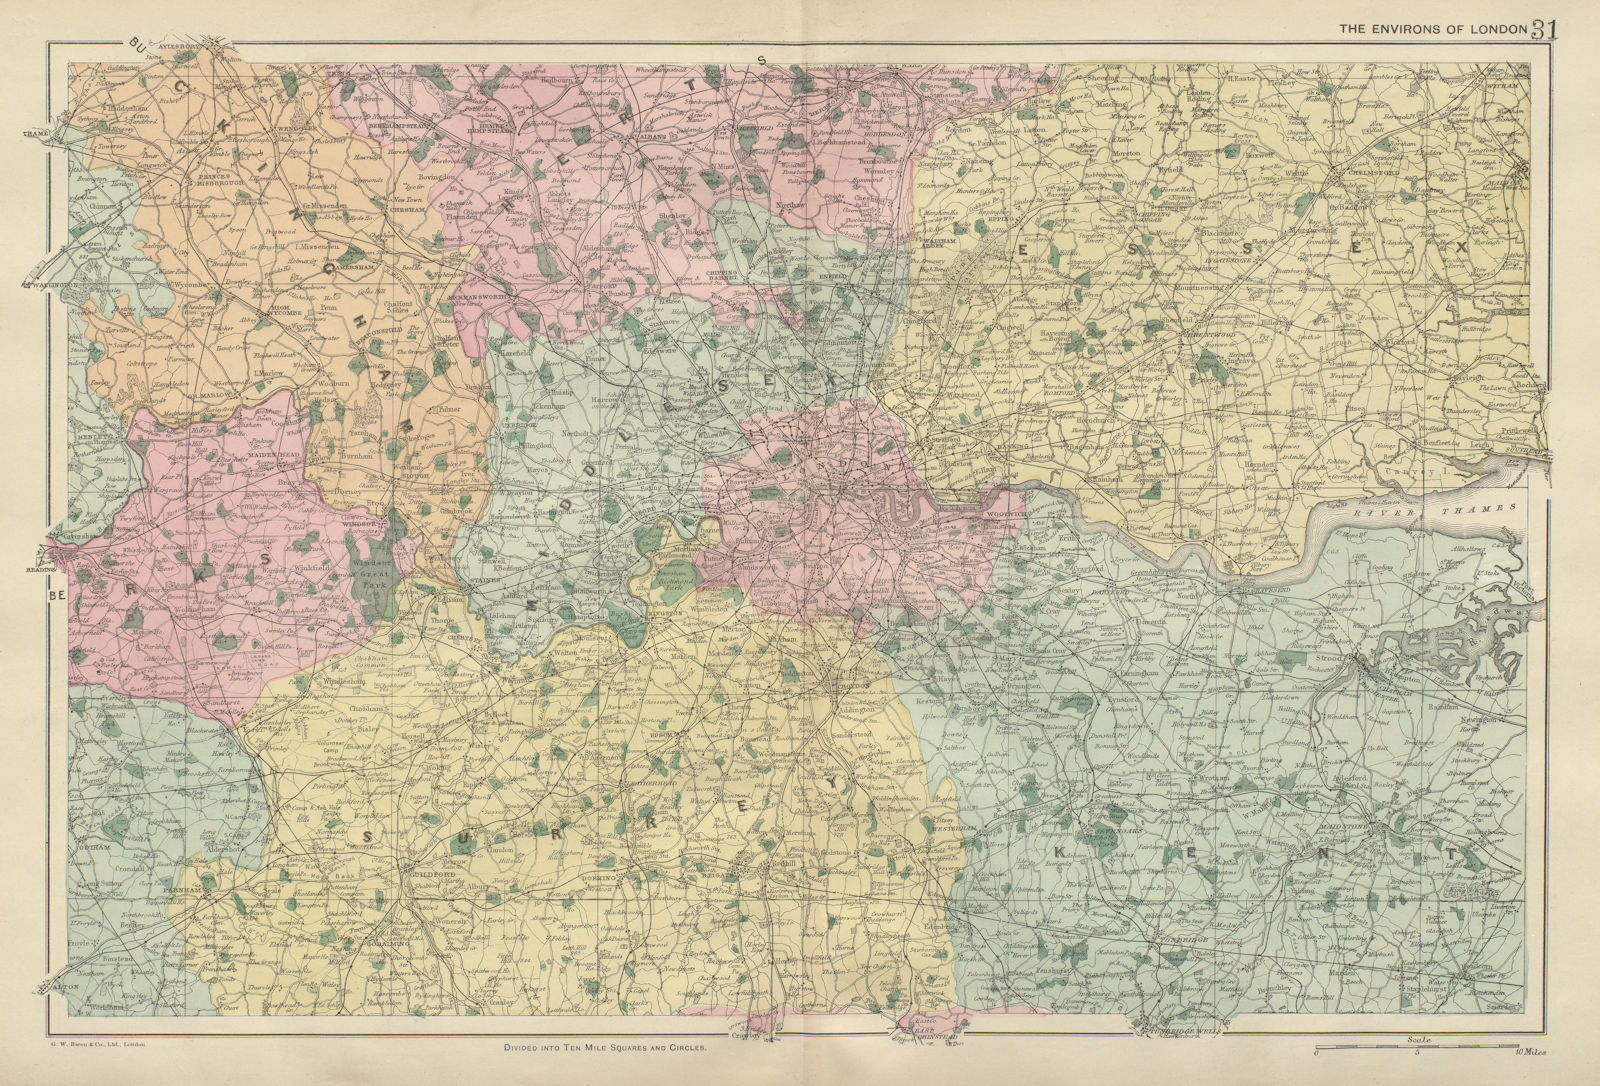 LONDON & HOME COUNTIES Middx Essex Kent Surrey Berks Bucks Herts BACON 1900 map